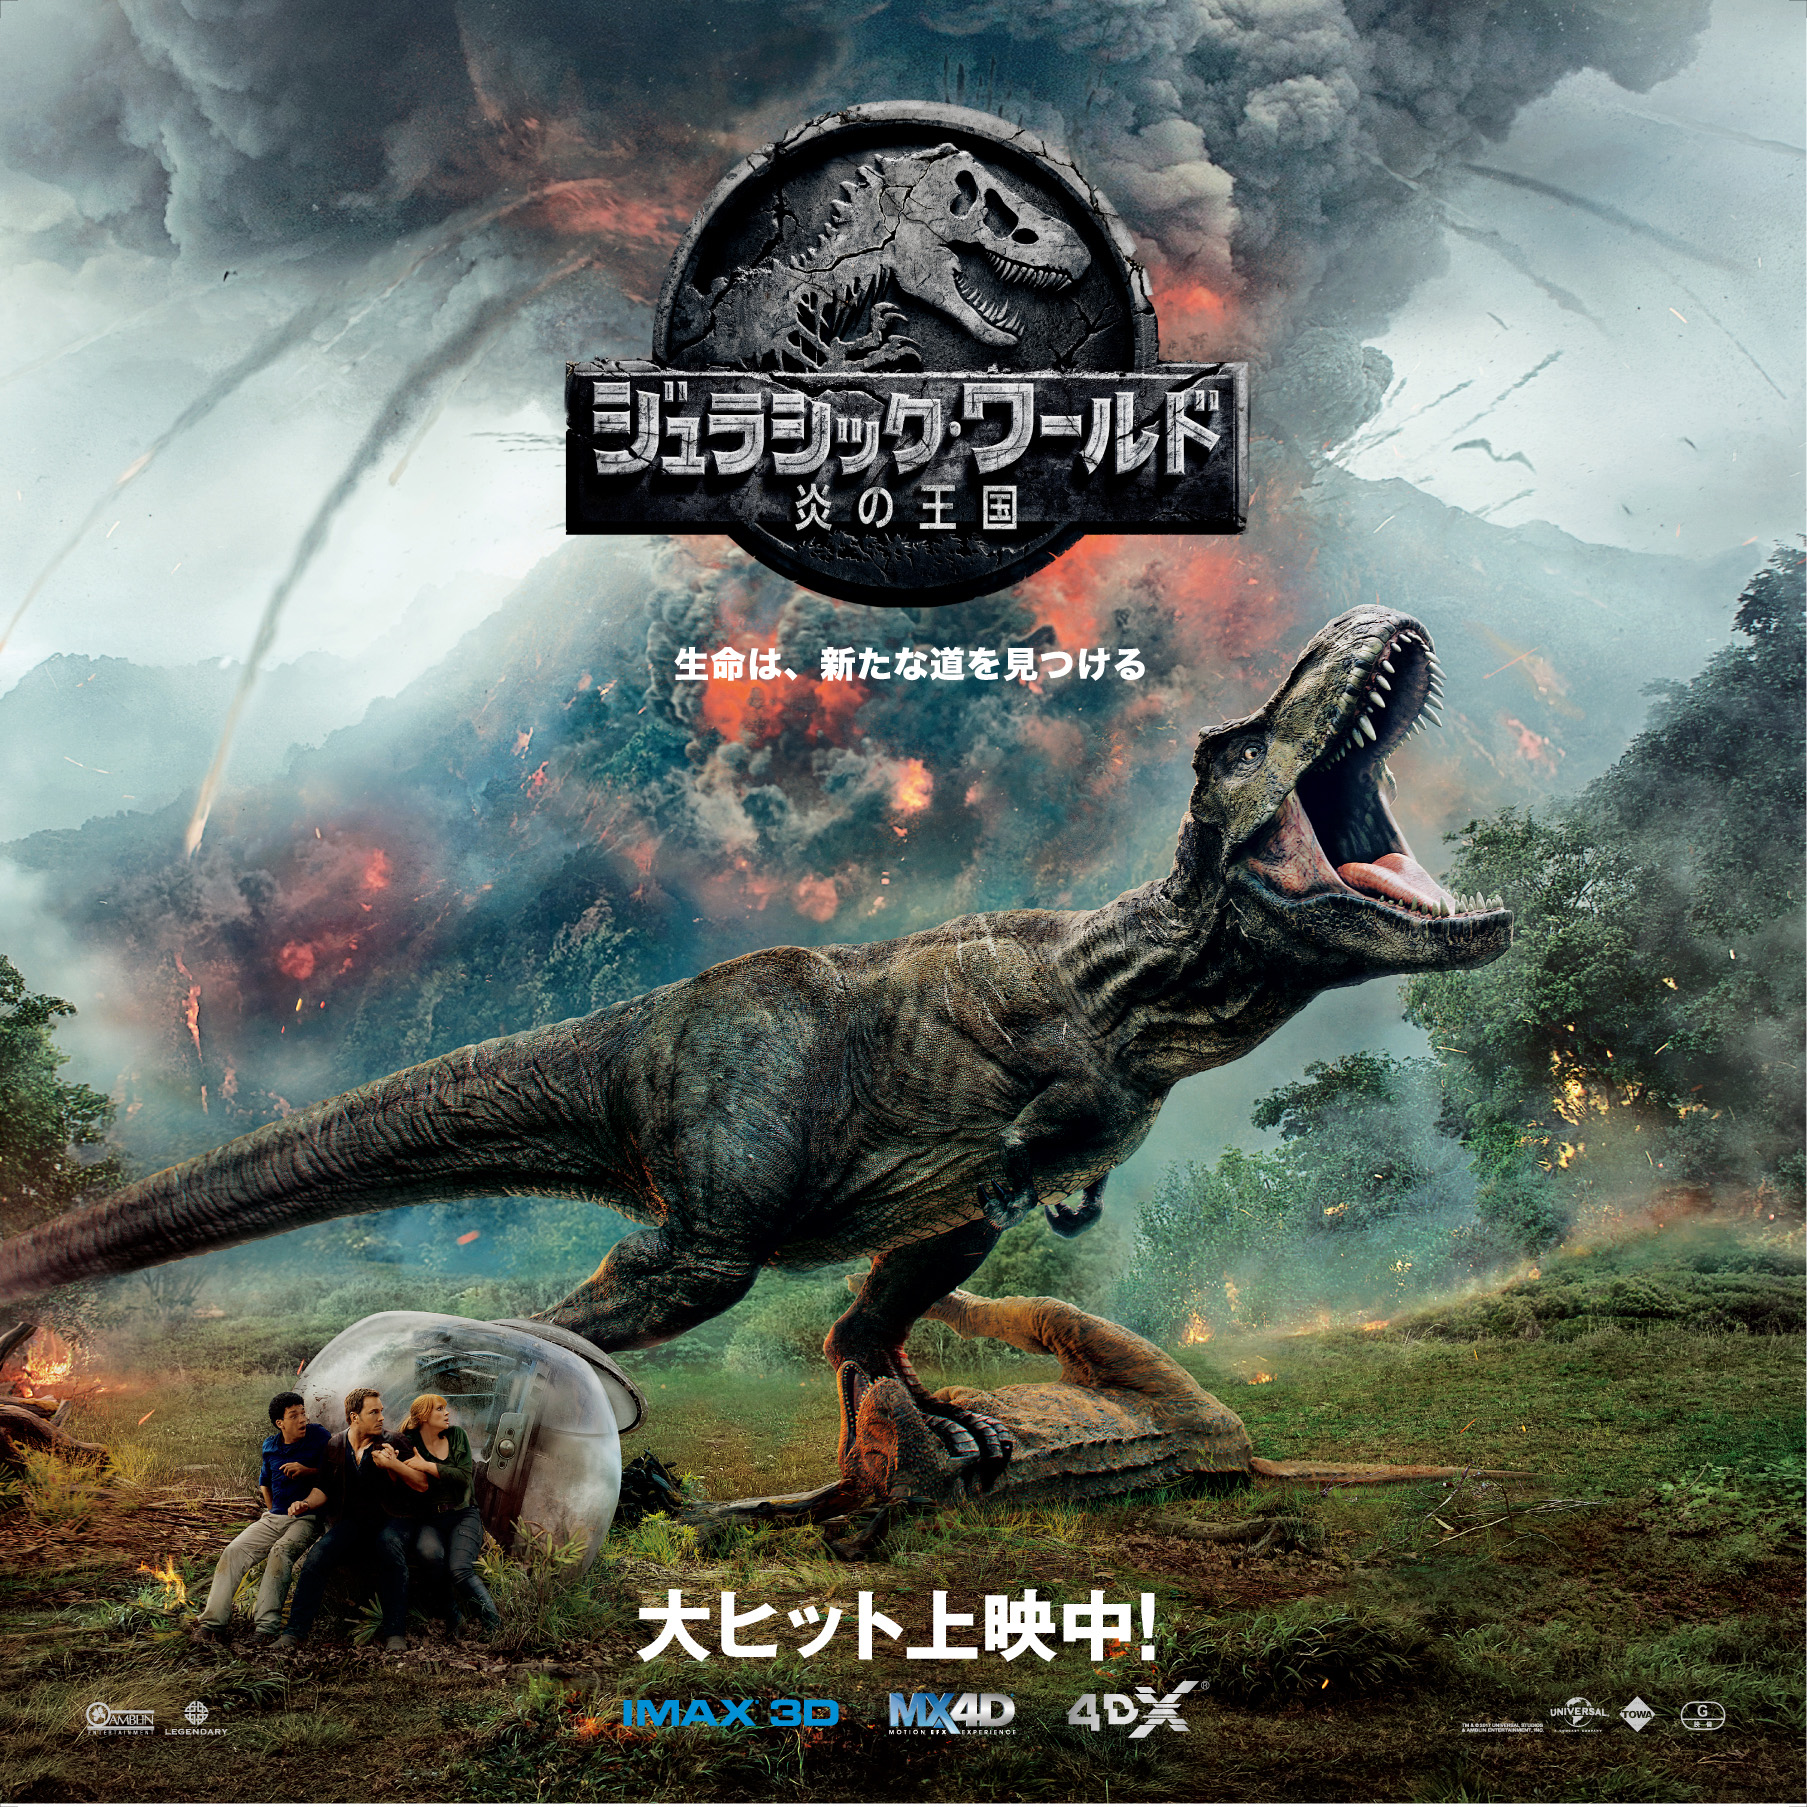 銀座三越に恐竜がやってくる サマー恐竜フェスタ 株式会社 三越伊勢丹ホールディングスのプレスリリース